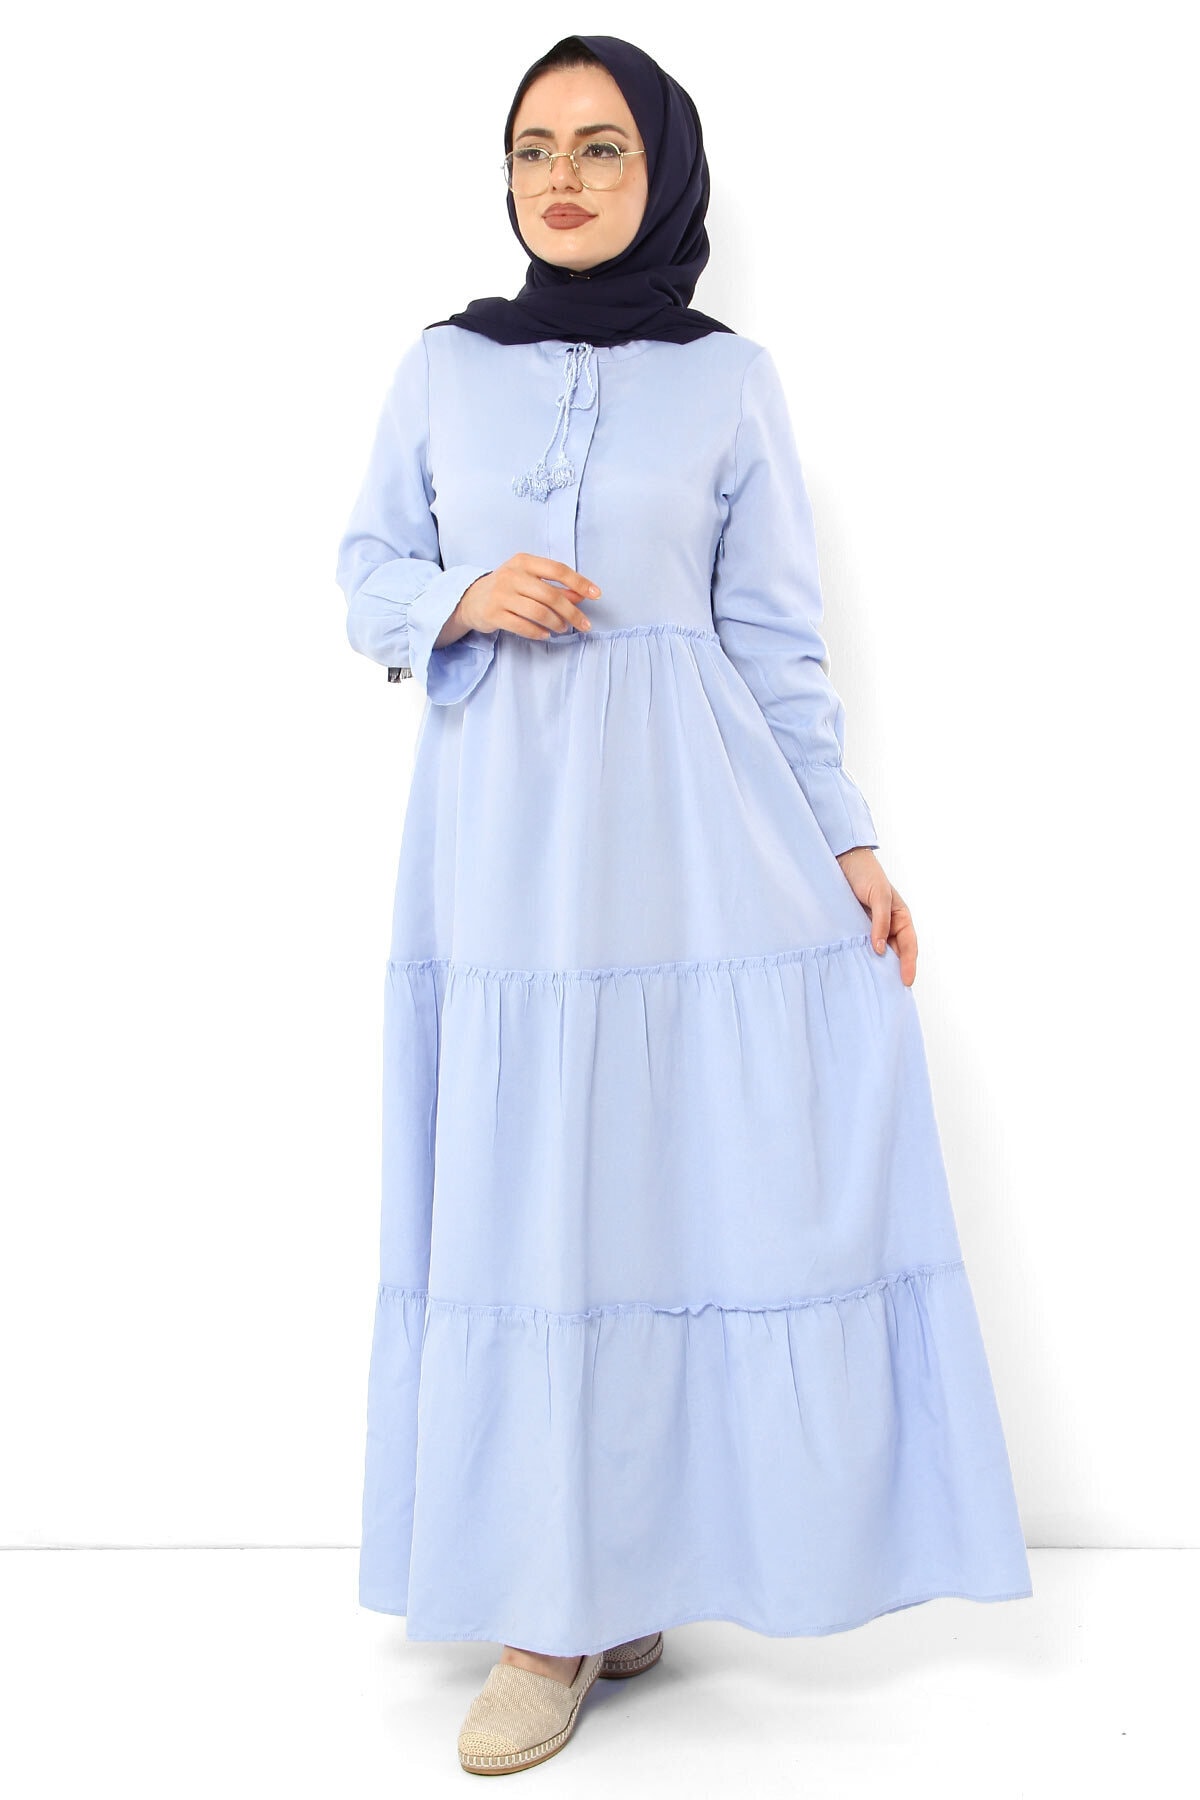 Tesettür Dünyası - Pileli Kolları Lastikli Tesettür Elbise TSD0173 Bebe Mavisi